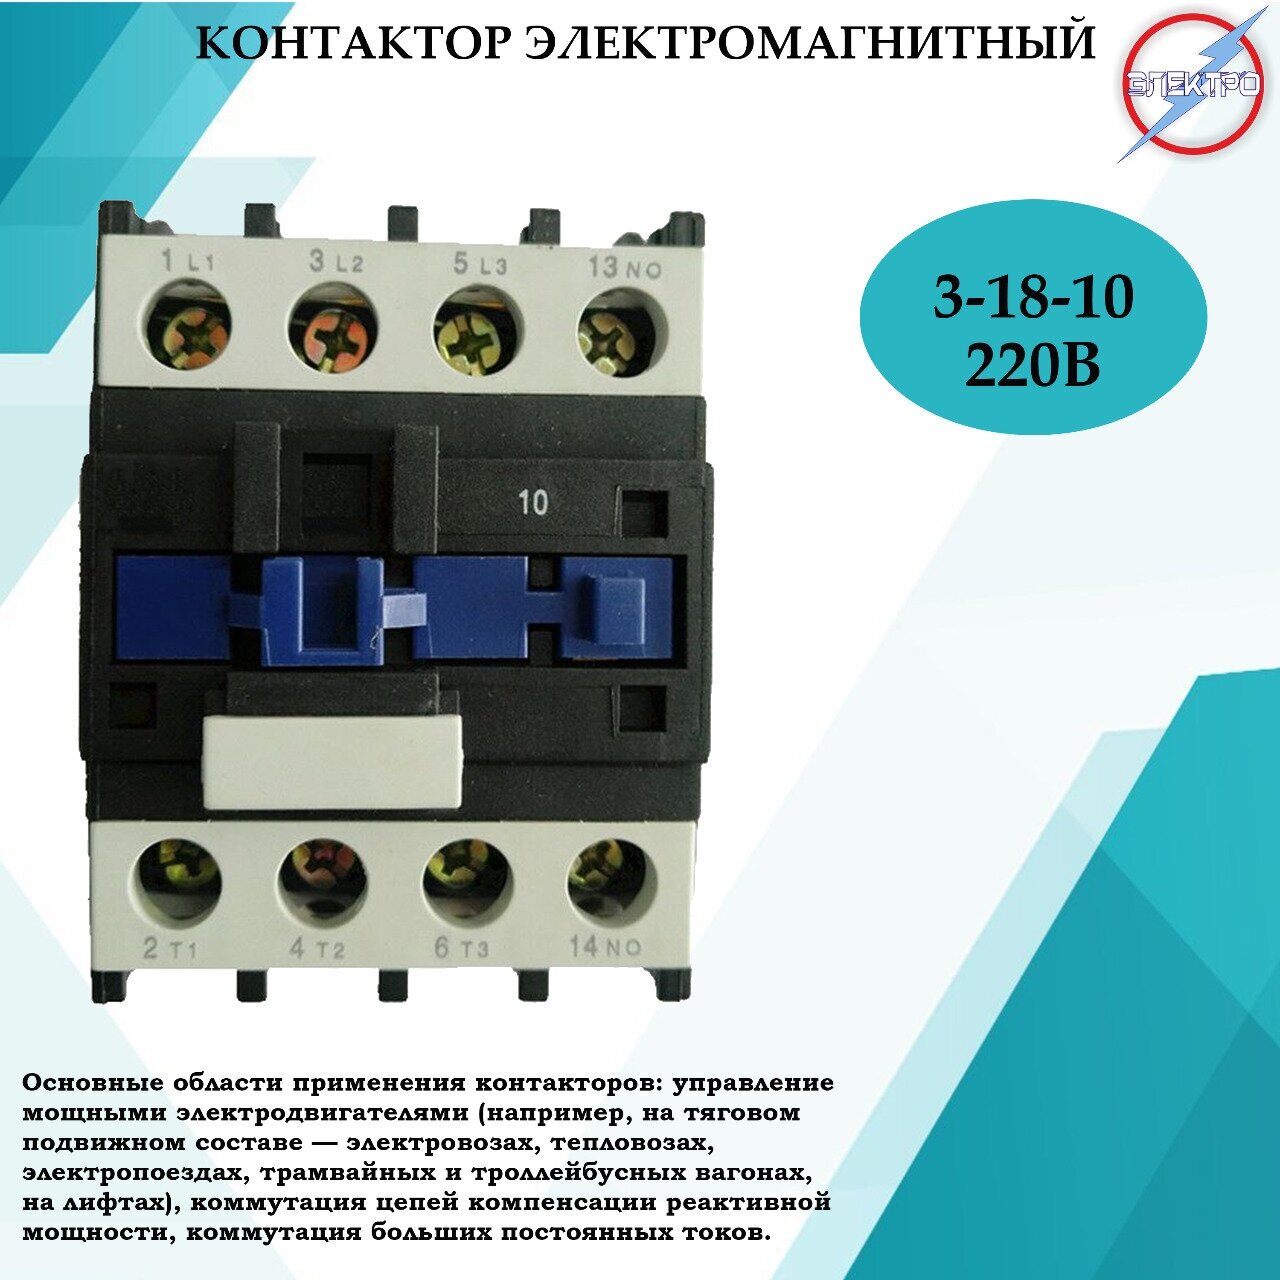 Контактор электромагнитный КМ 3 - 18 - 10 - 220В